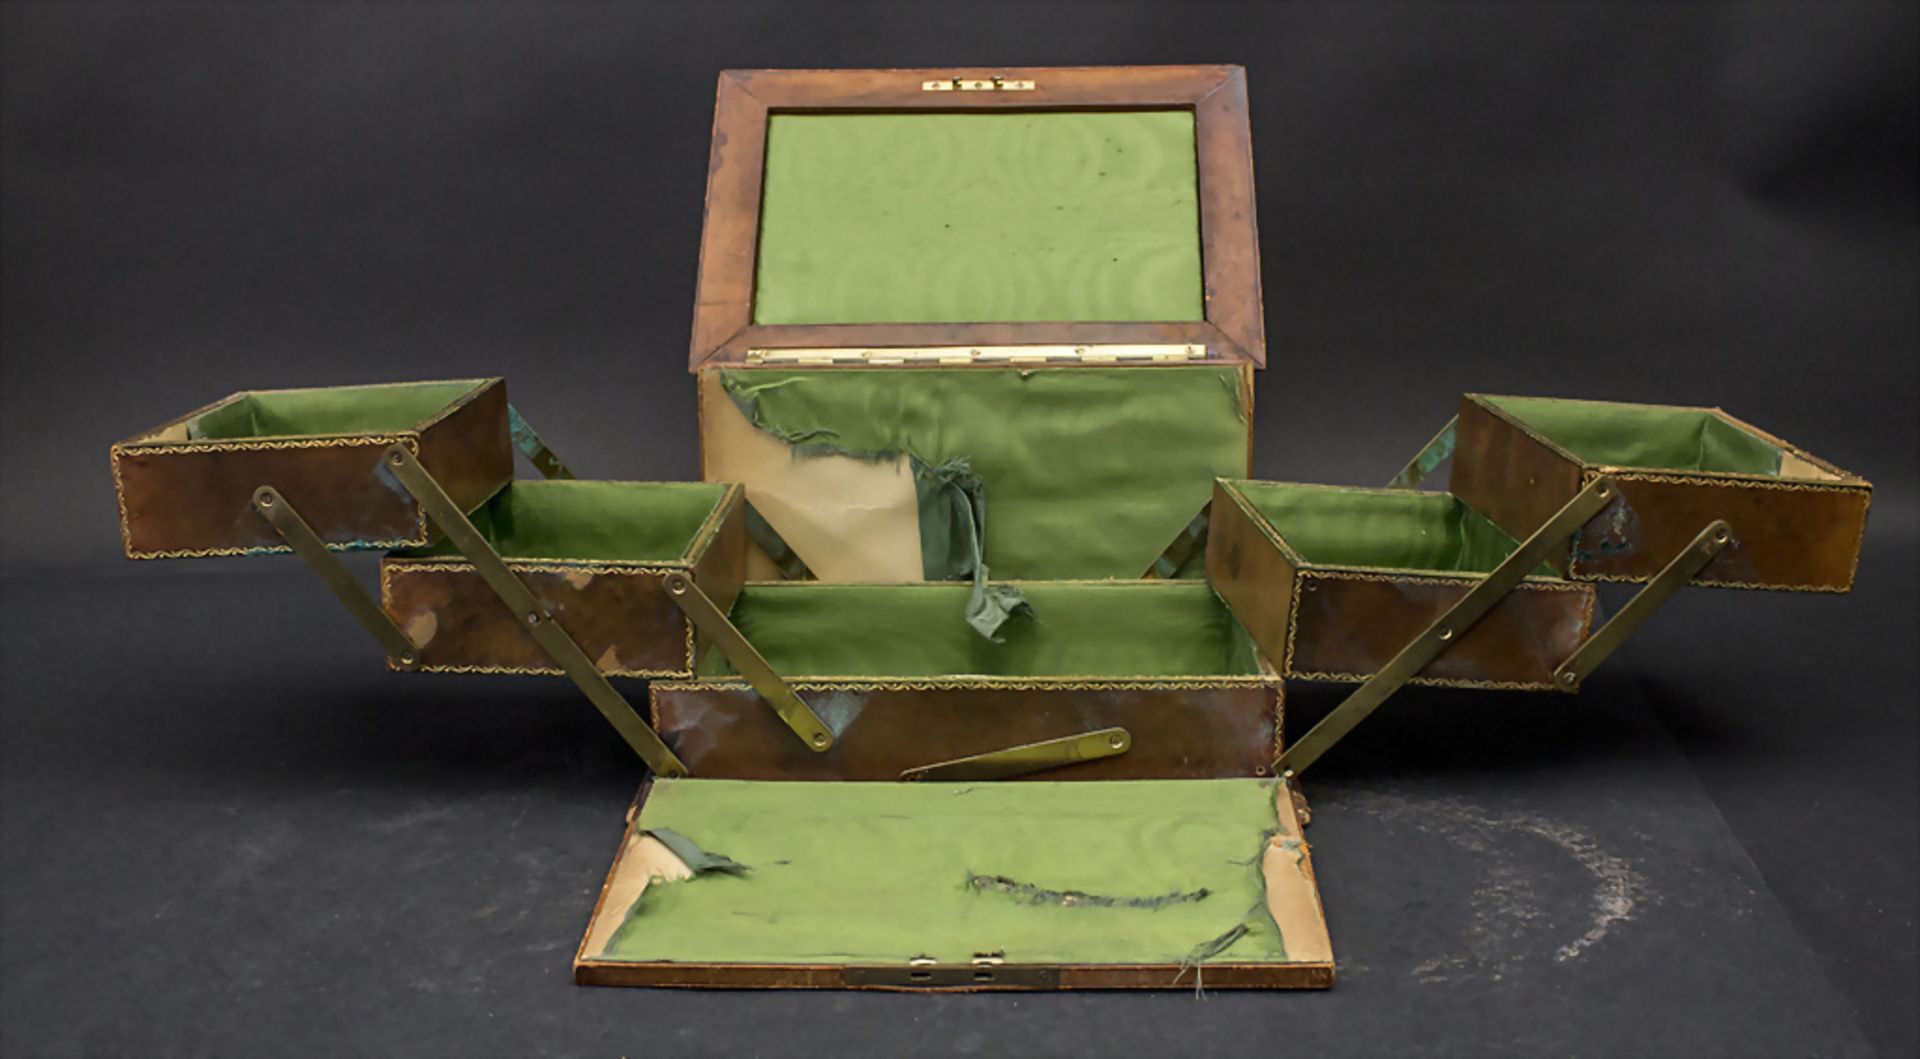 Jugendstil Nähkästchen / An Art Nouveau sewing box, um 1900